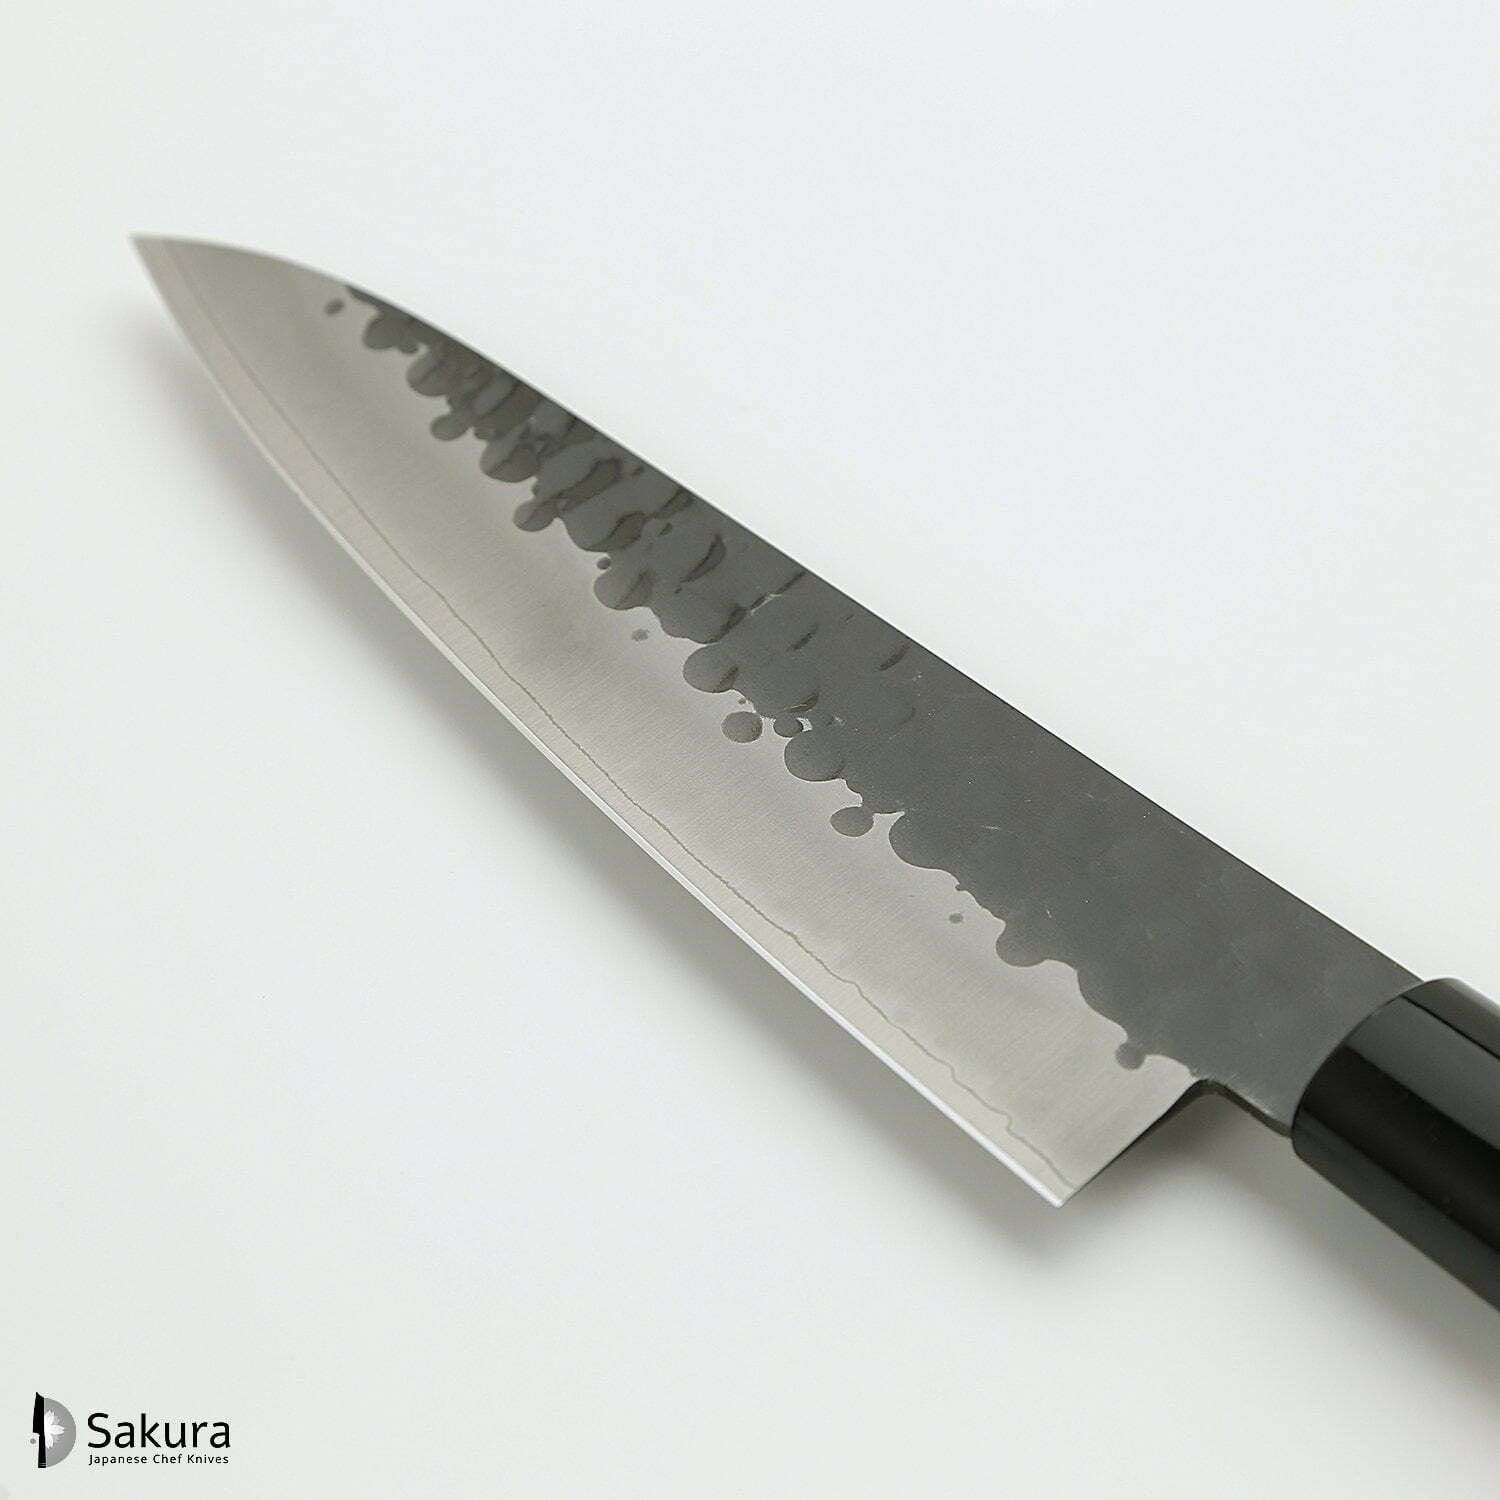 סכין שף רב-תכליתית גִּיוּטוֹ 180מ״מ מחוזקת 3 שכבות: פלדת פחמן יפנית VG-10 עטופה פלדת אל-חלד גימור קורואיצ׳י שחור עם ריקוע פטיש טוג׳ירו יפן